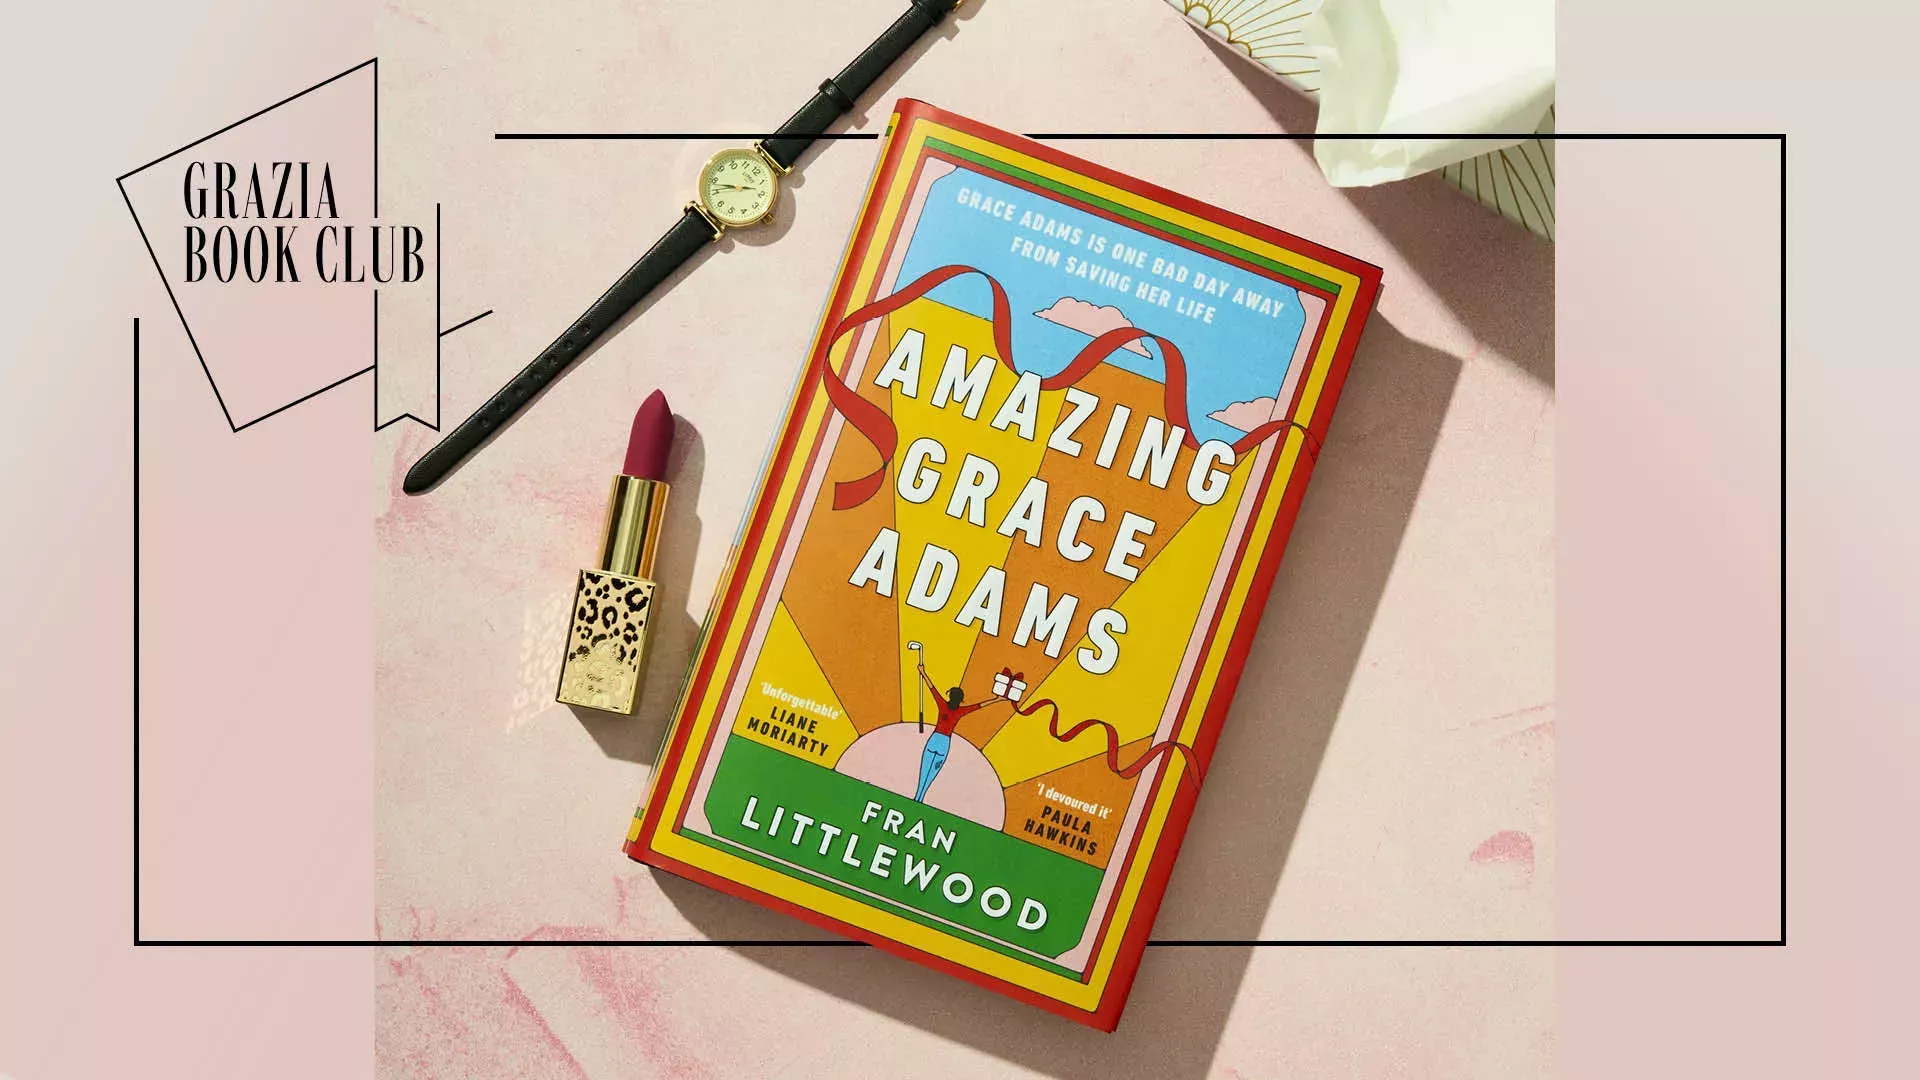 La última lectura del Club de Lectura de Grazia: Amazing Grace Adams de Fran Littlewood